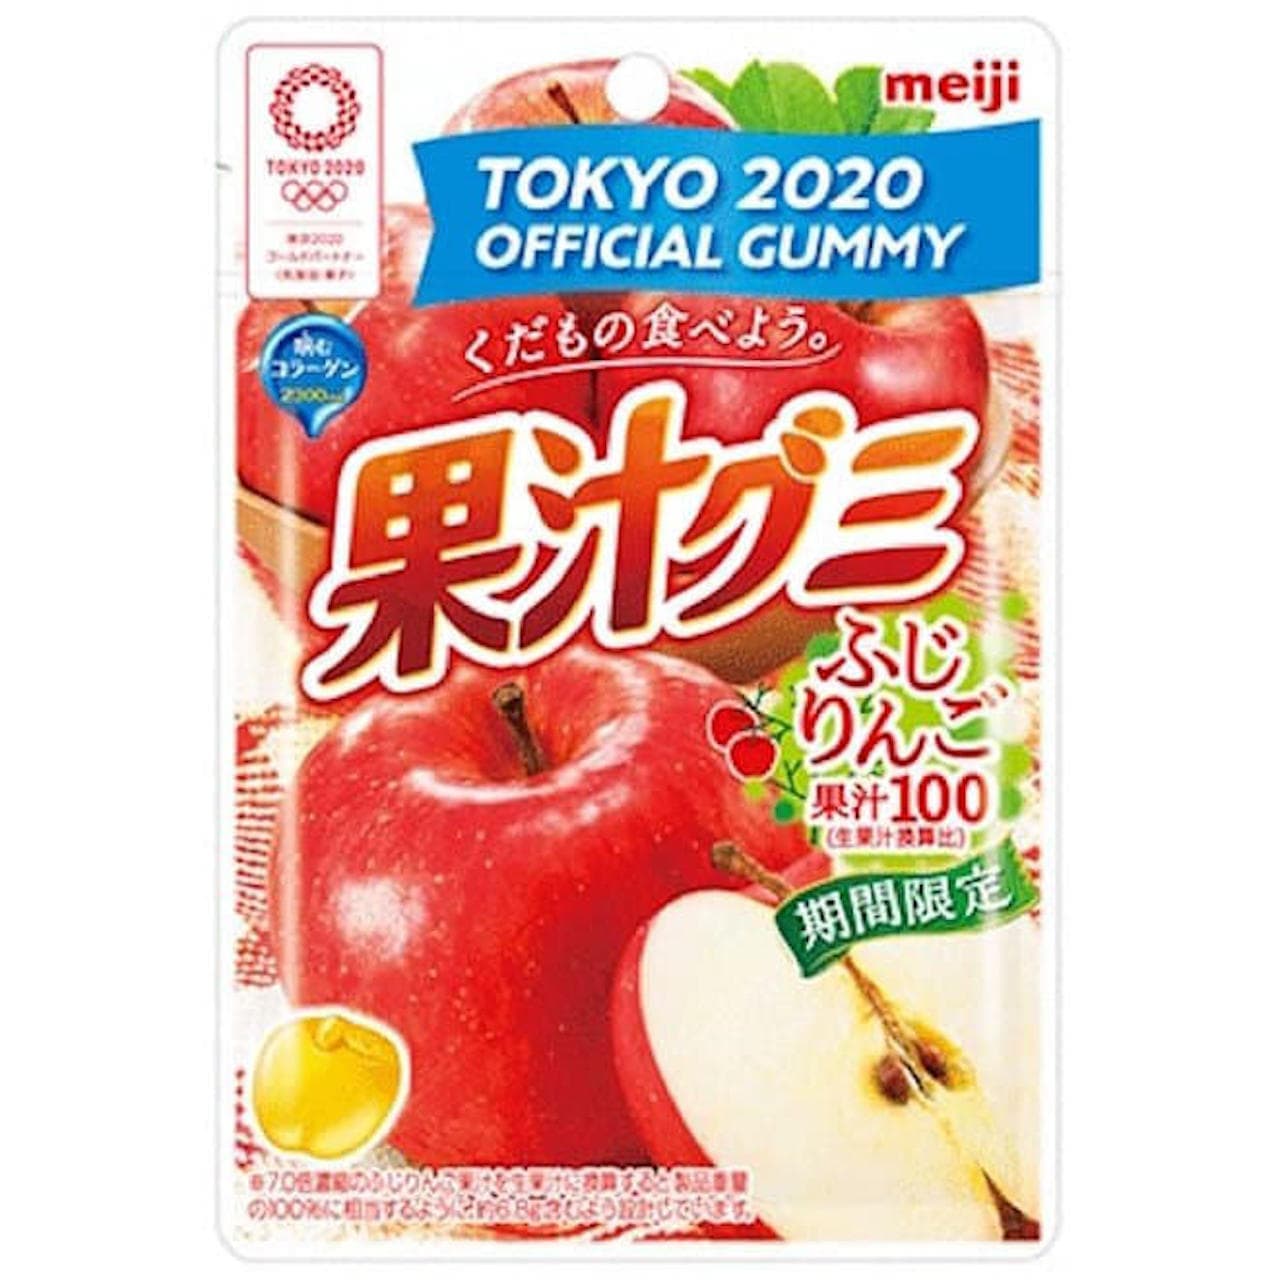 Meiji "Fruit Juice Gumi Fuji Apple"